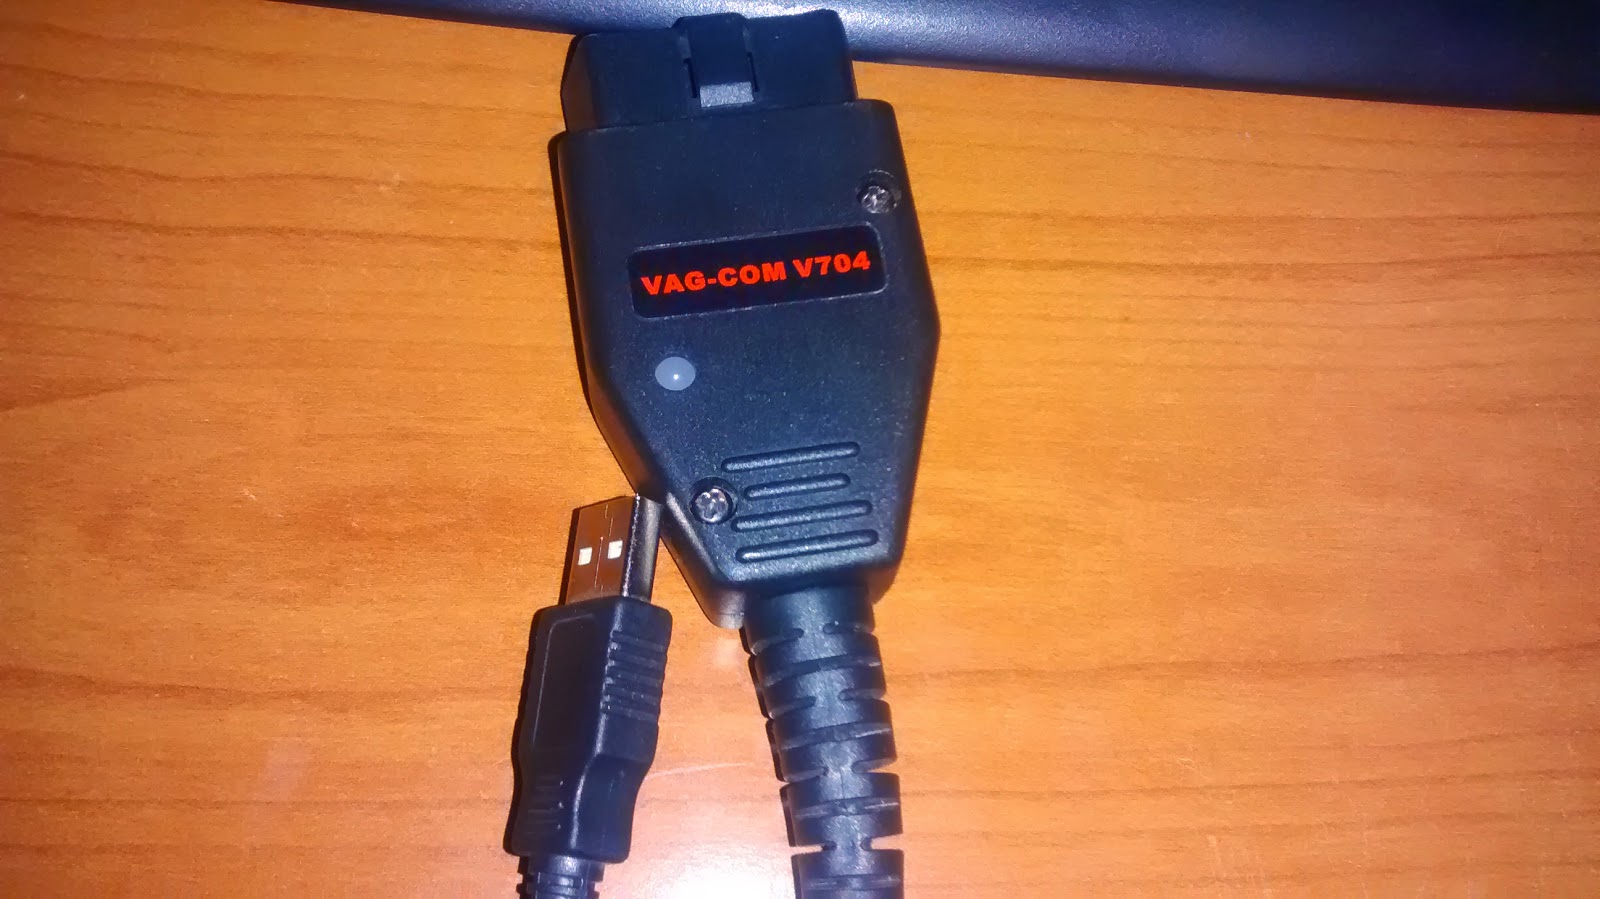 COMO RECUPERAR CABLE VAG COM - Página 22 - Vagcom (VCDS) - Audisport Iberica